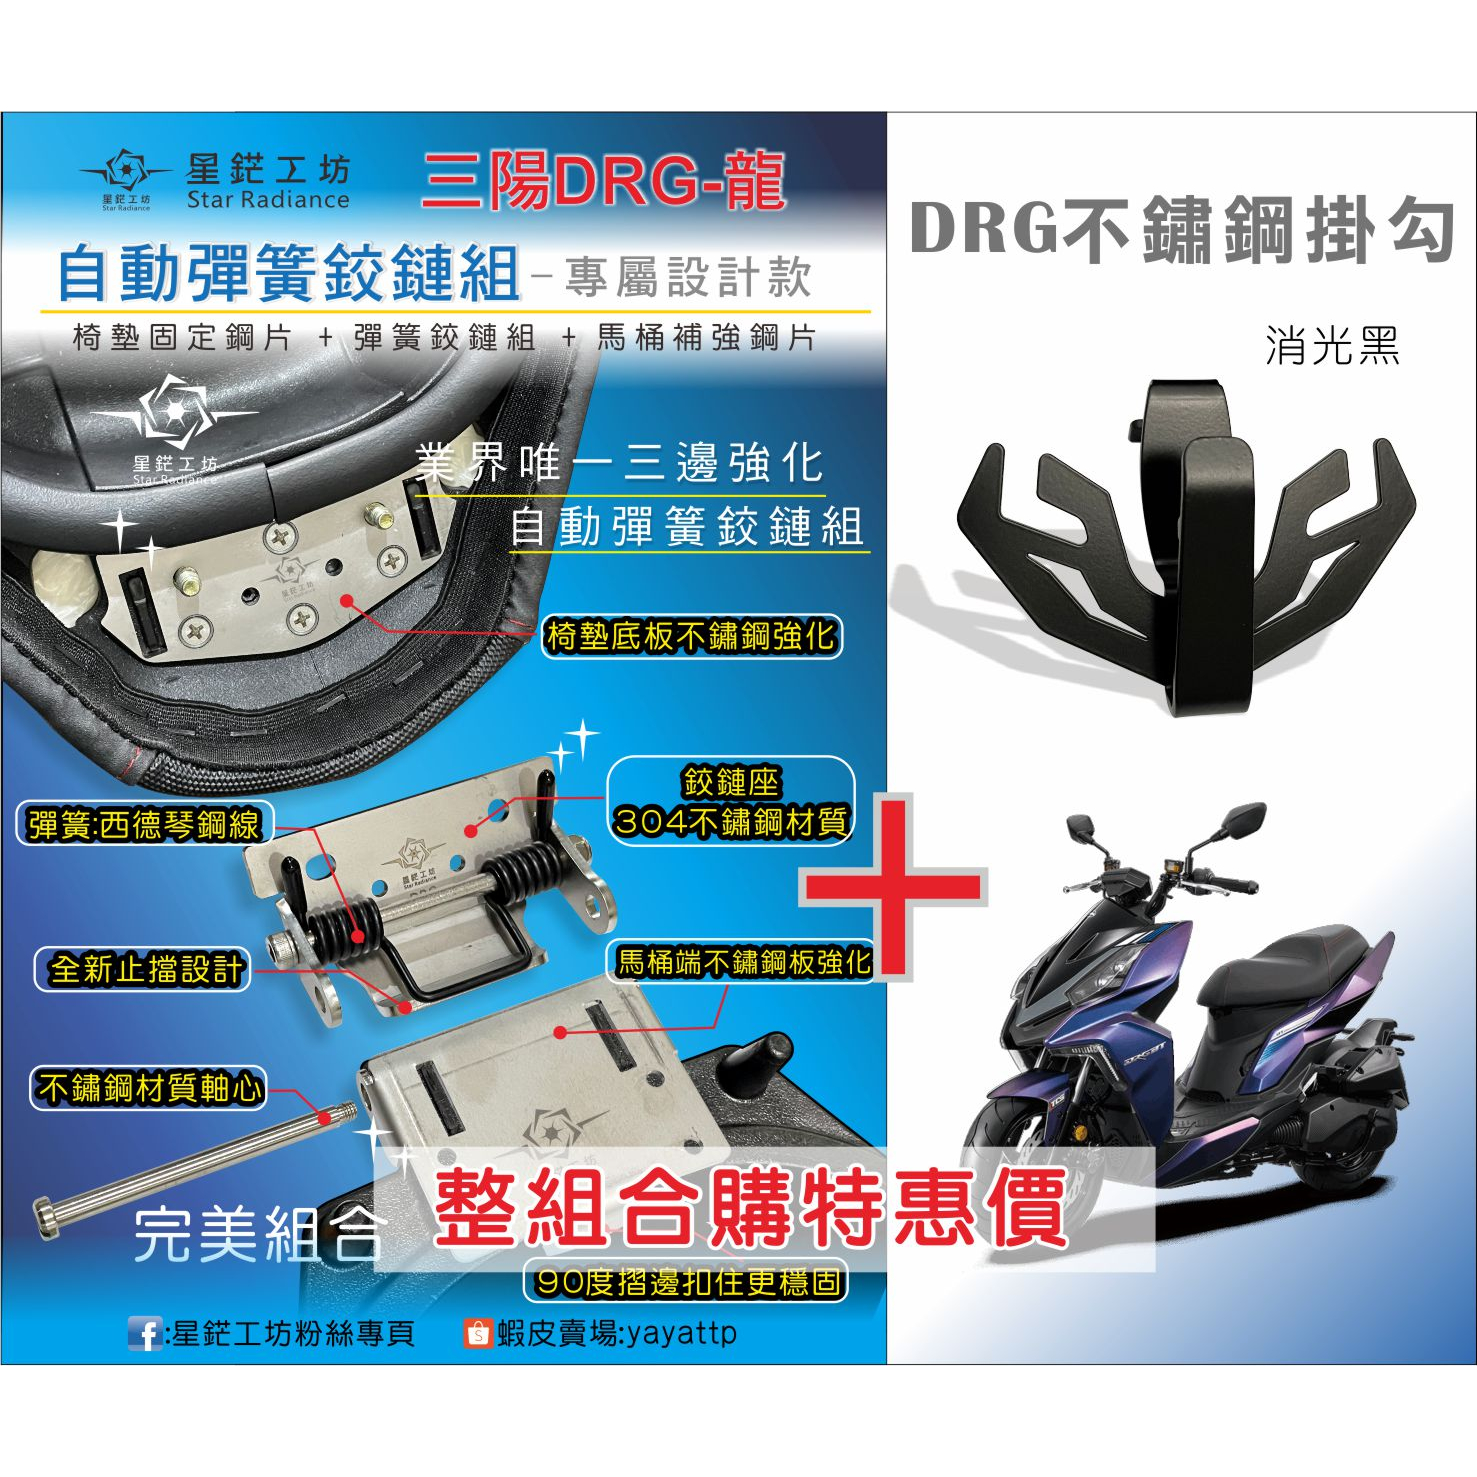 三陽機車DRG  158 龍 新款自動彈簧鉸鏈椅墊馬桶保護組 全新設計鉸鏈馬桶強化版、椅墊固定片，星鋩工坊、彈簧鉸鏈